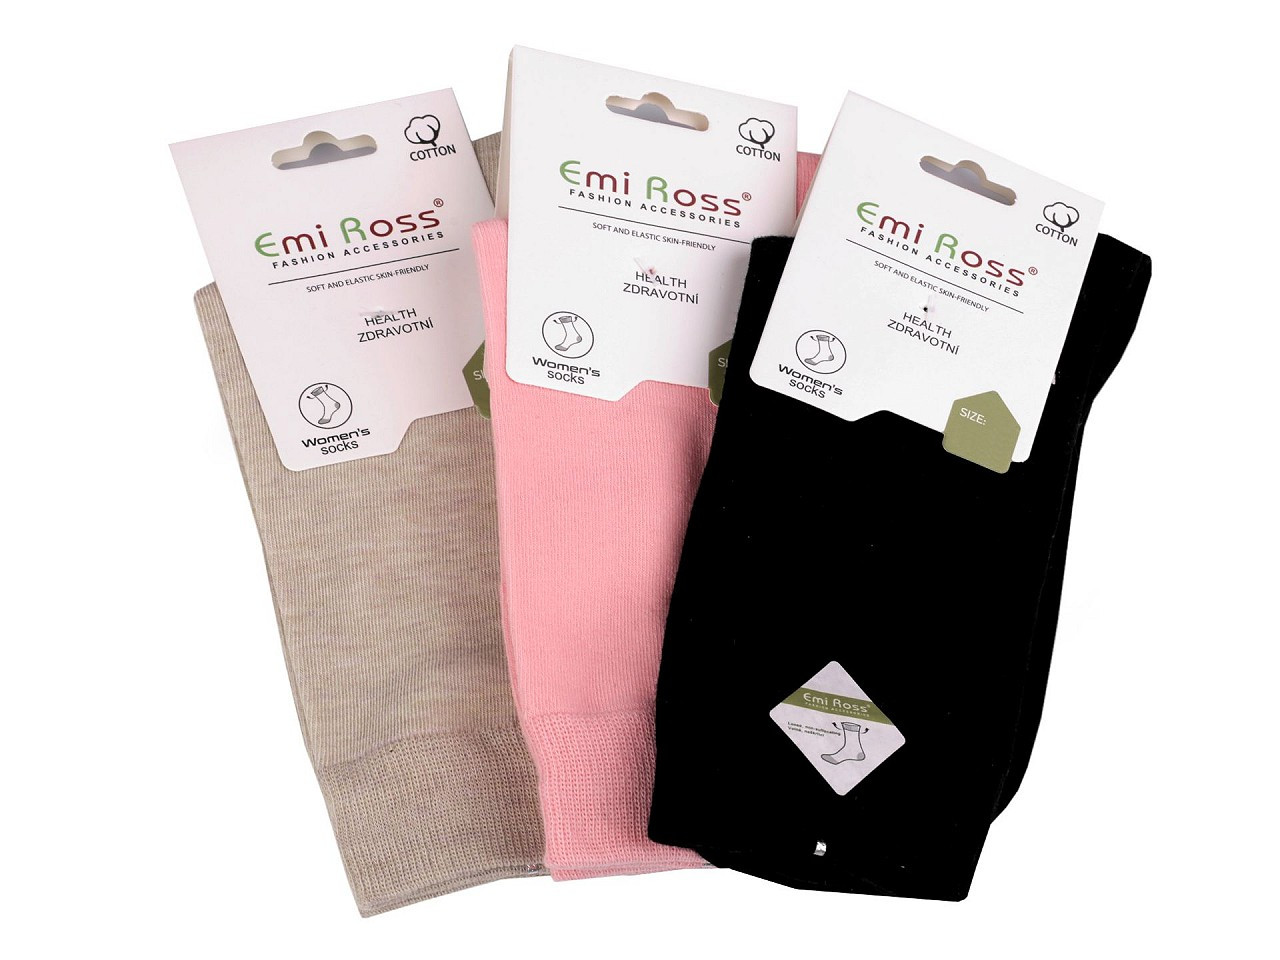 Dámské bavlněné ponožky Emi Ross, barva 15 (vel. 39-42) mix